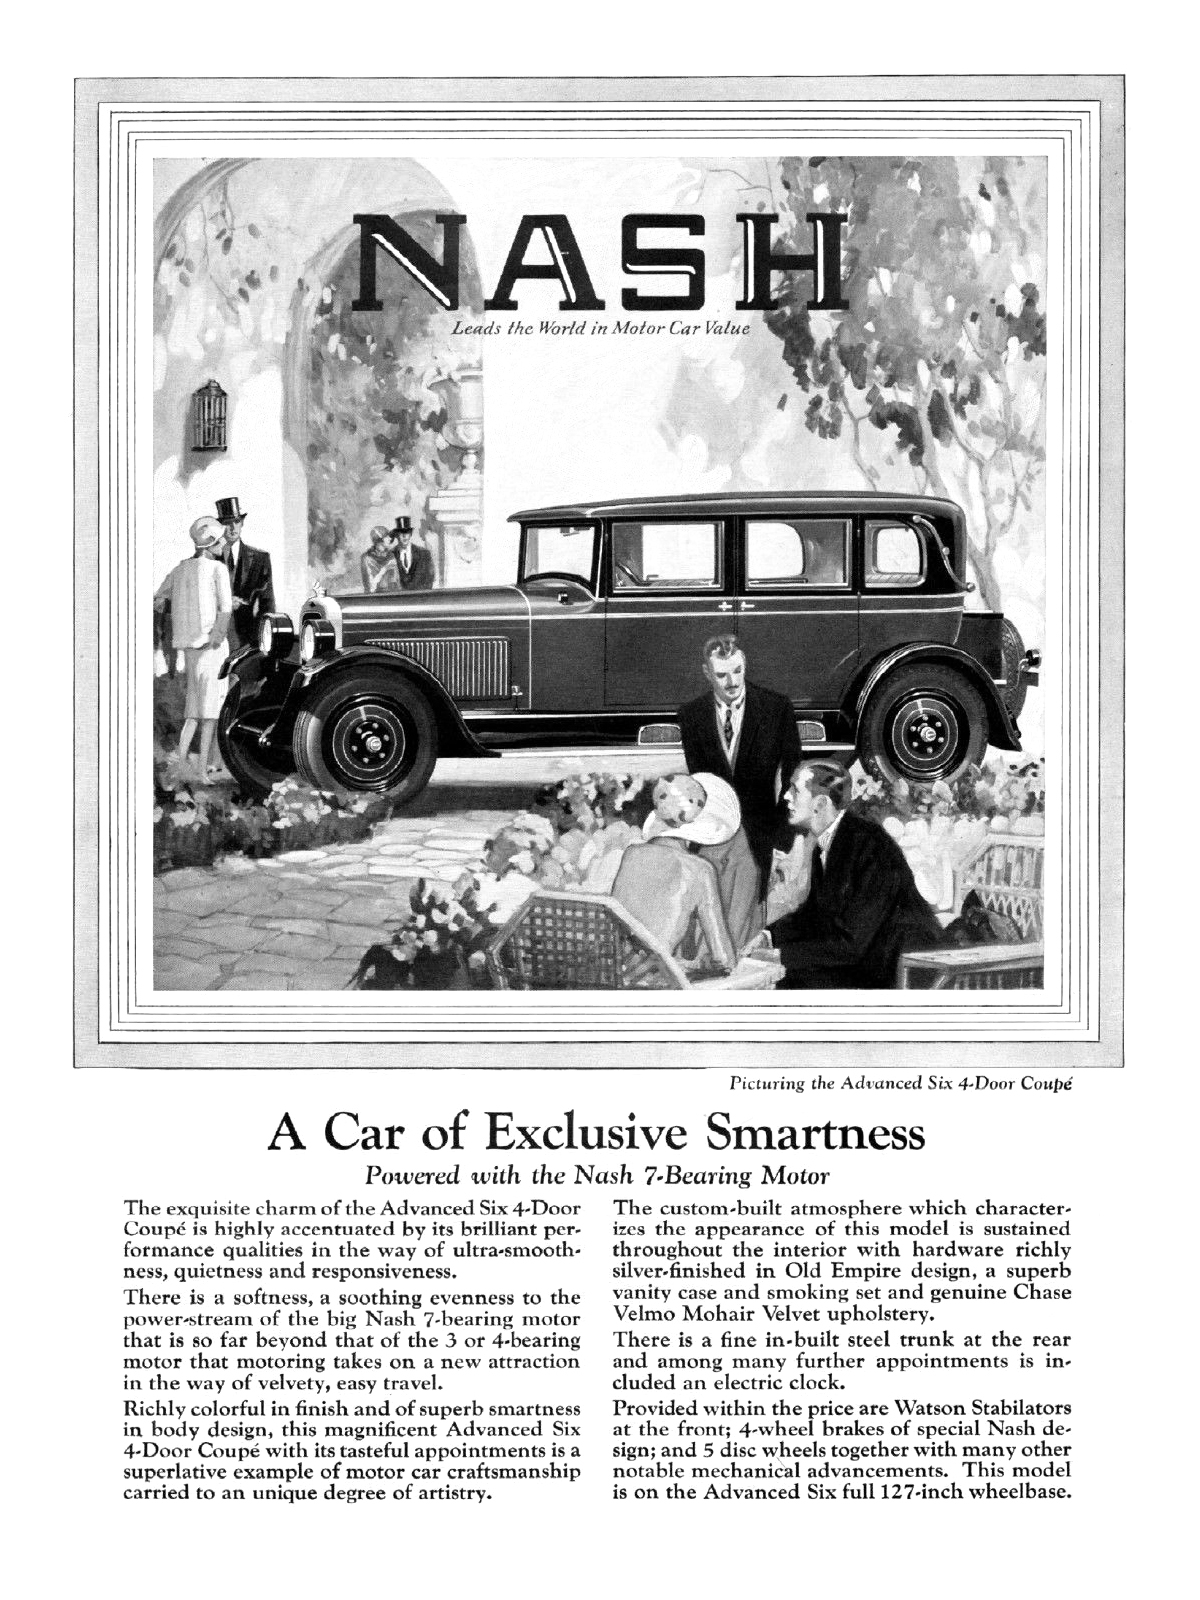 Nash Advanced Six 4-Door Coupe Ad (April, 1927): A Car of Exclusive Smartness